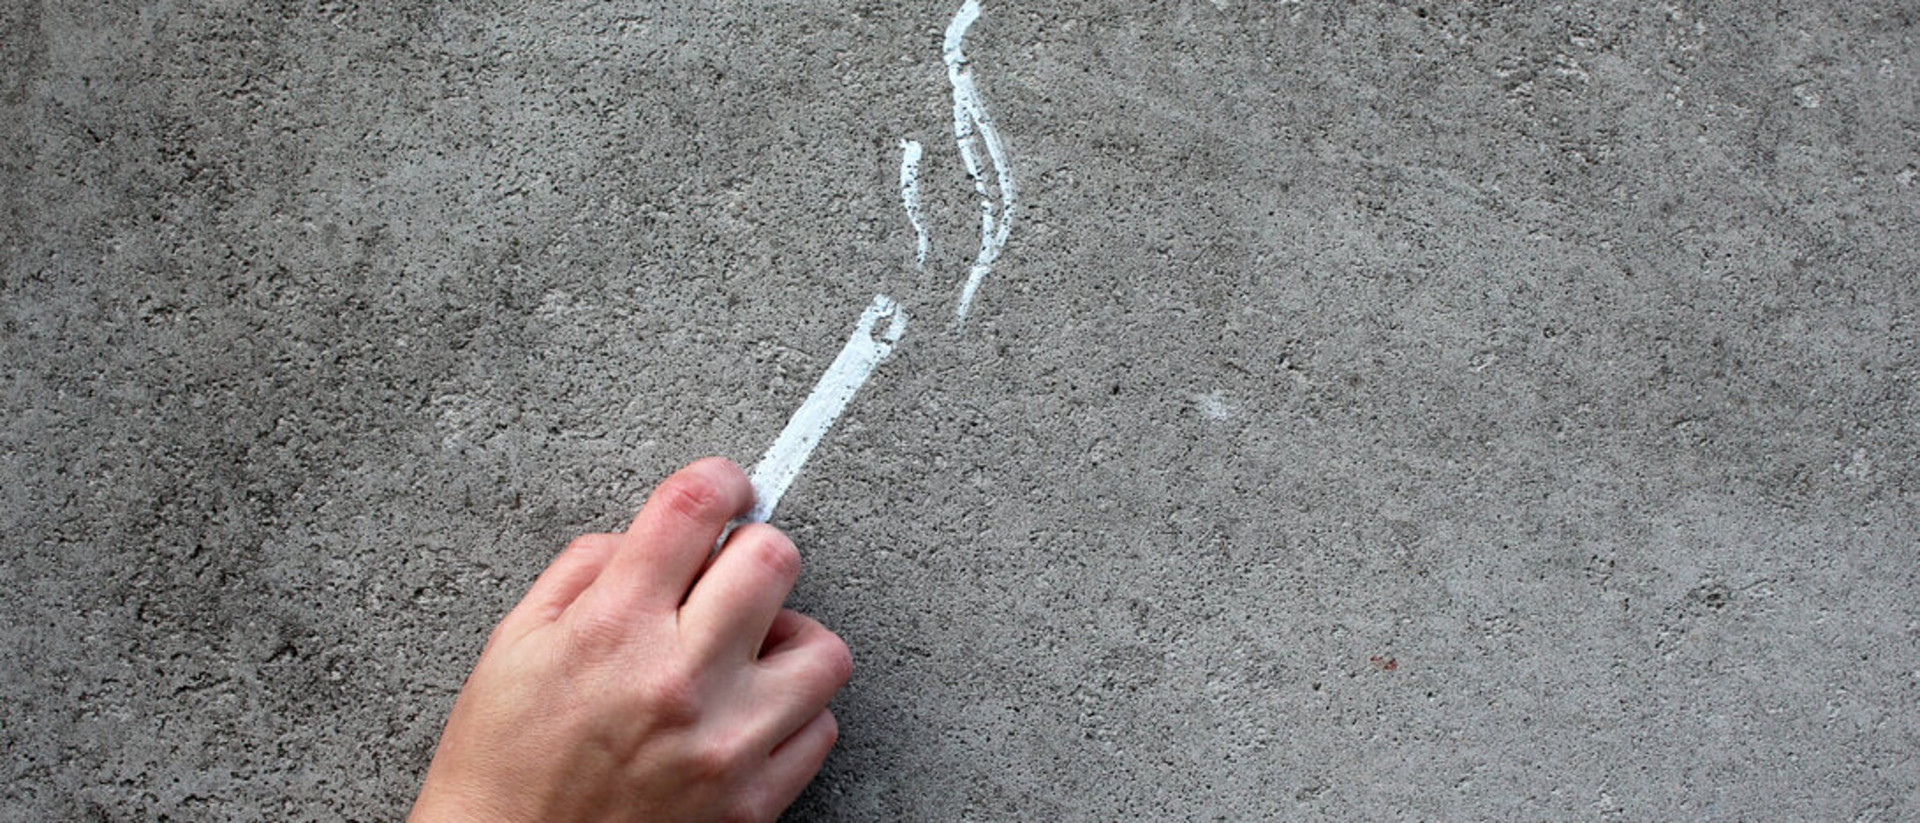 Auf einen grauen Asphaltboden ist eine weiße Zigarette gemalt. Eine Hand liegt auf dem Asphaltboden auf der Höhe der Zigarette, sodass es aussieht, als ob sie sie hält. 